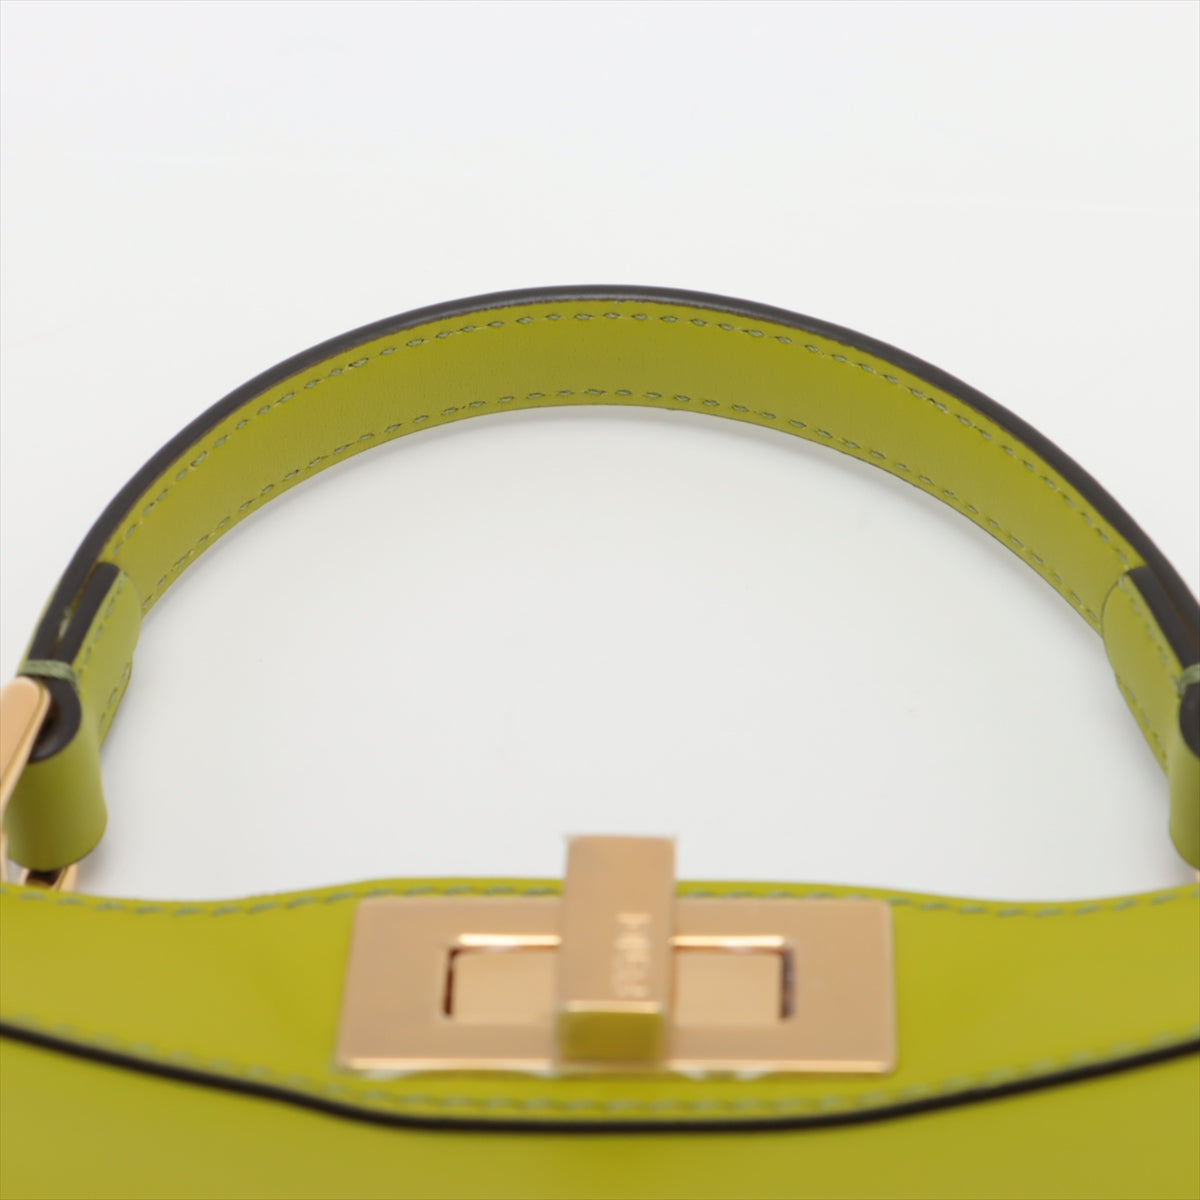 Fendi Peekaboo ICEU Small Leather 2WAY Handbag Green 8BN327